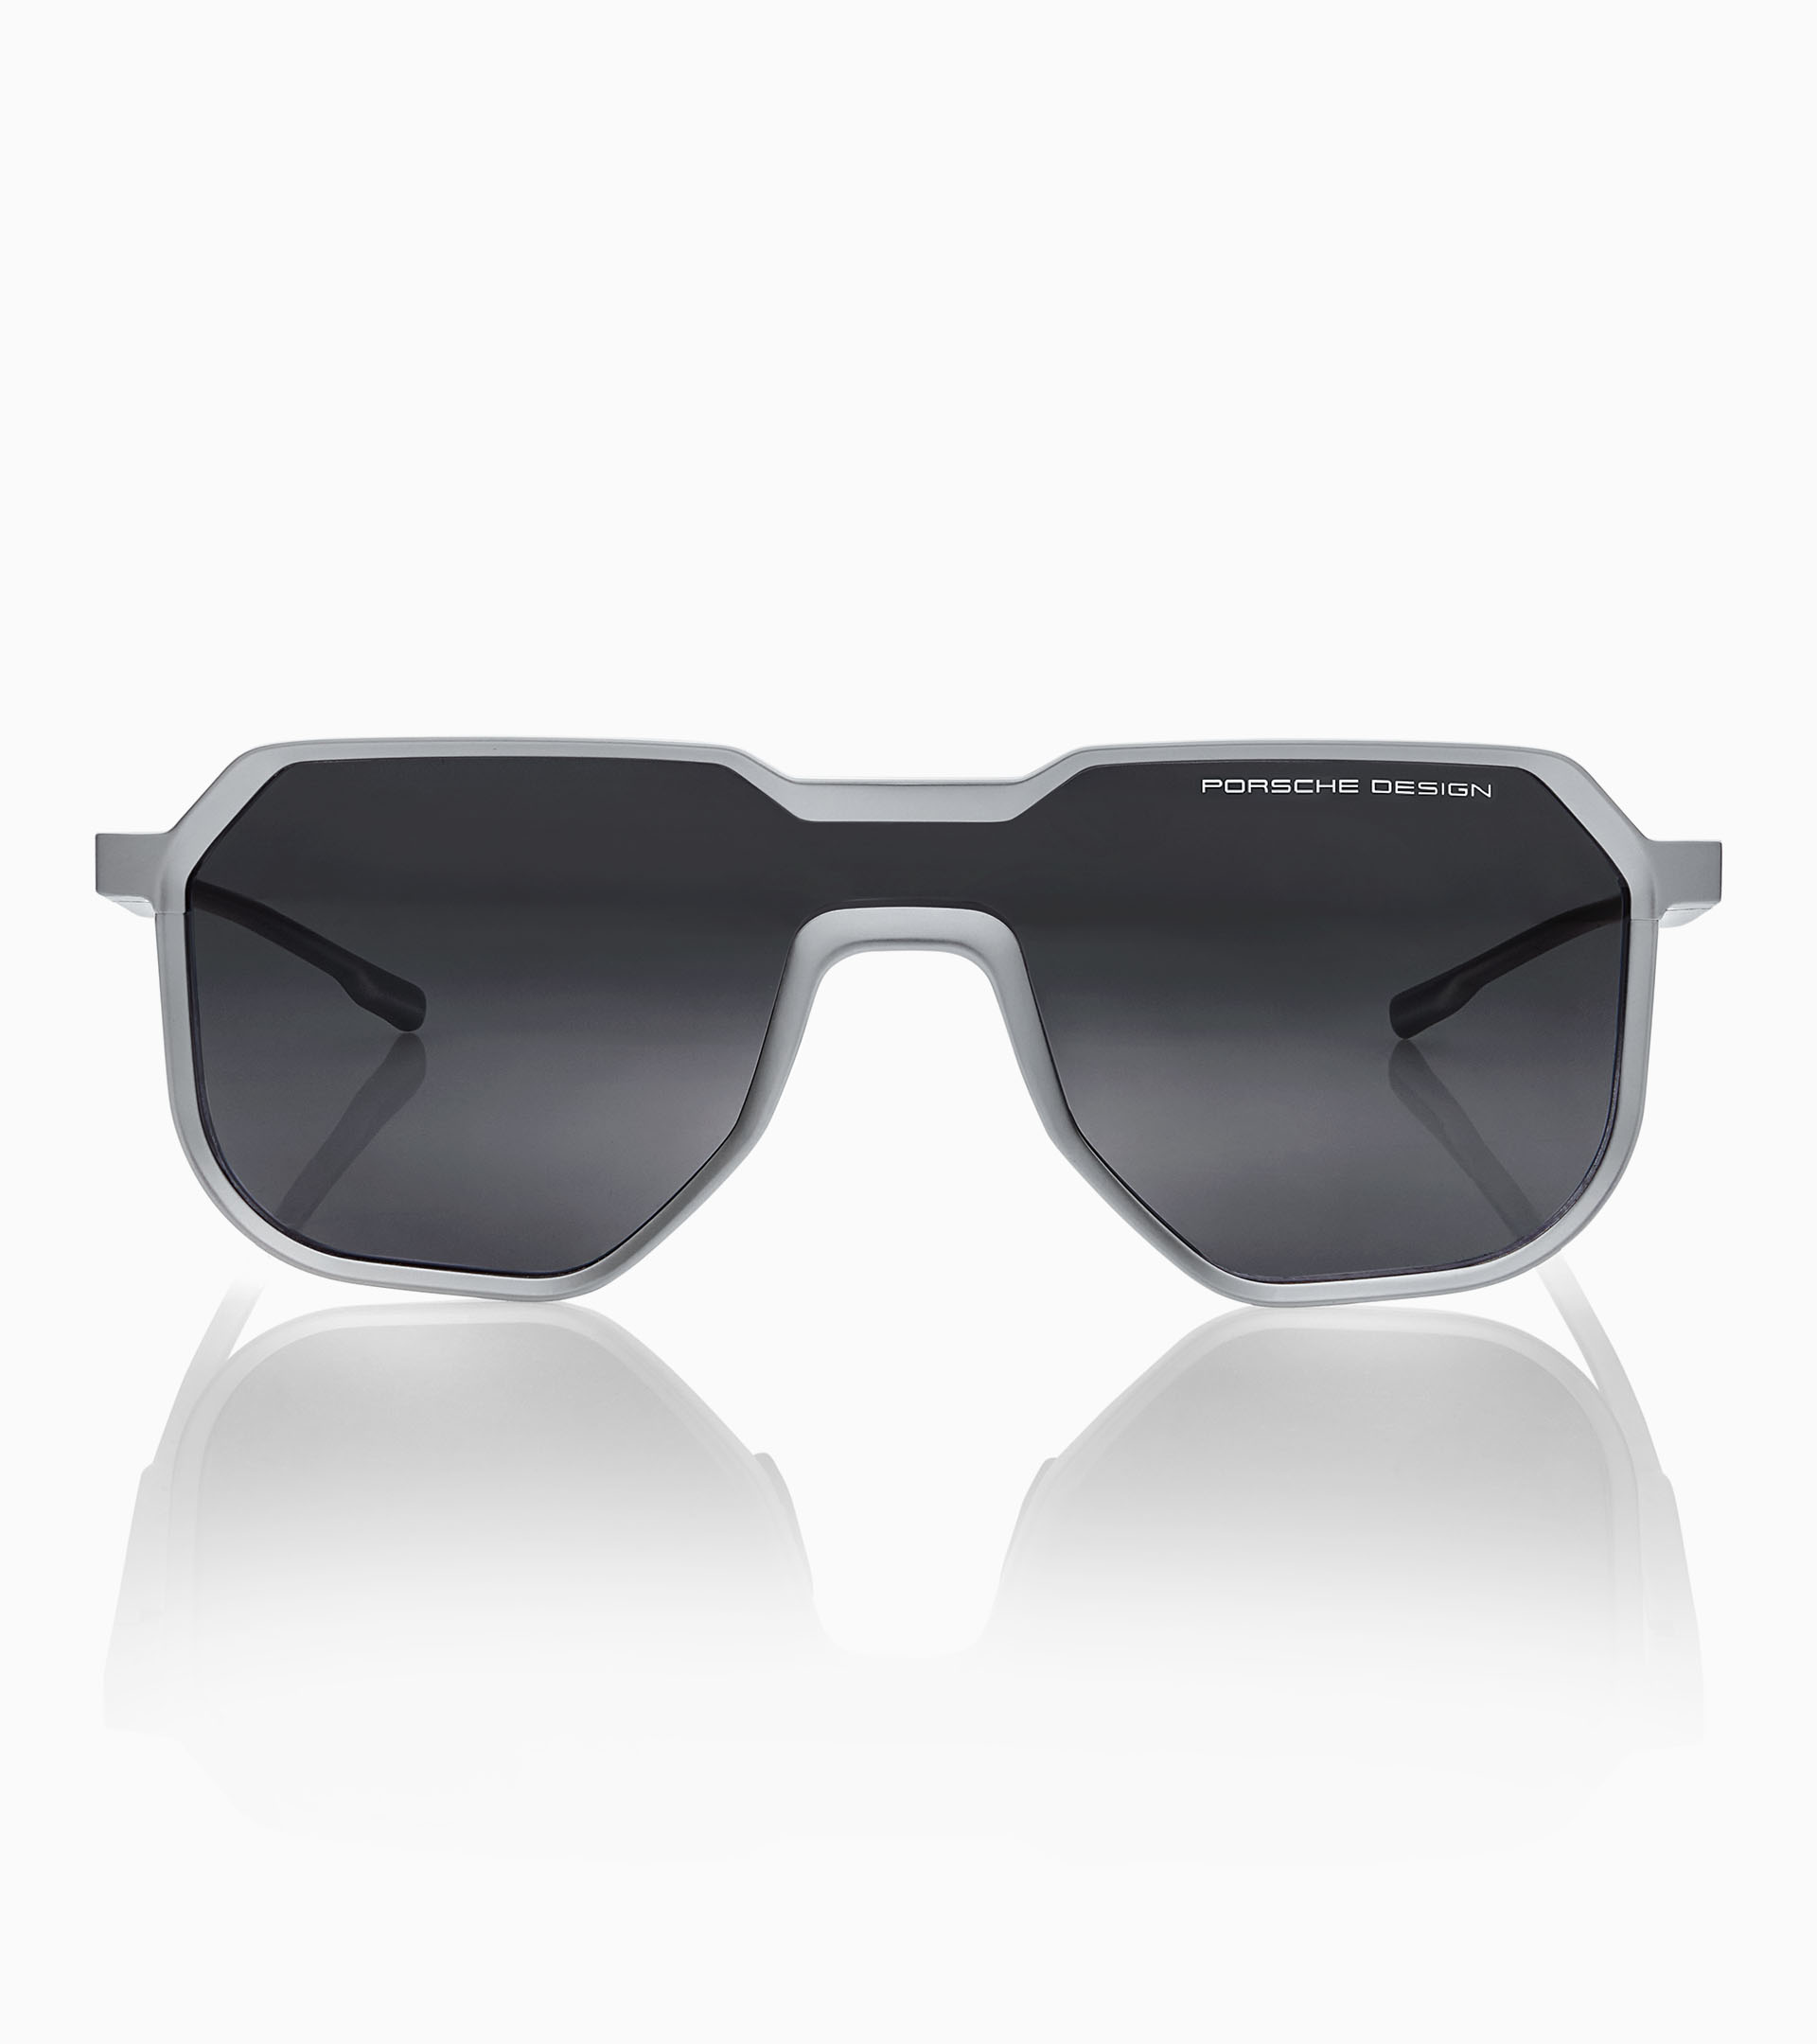 Sunglasses P´8951 Ltd. Edition - Square Sunglasses for Men | Porsche ...